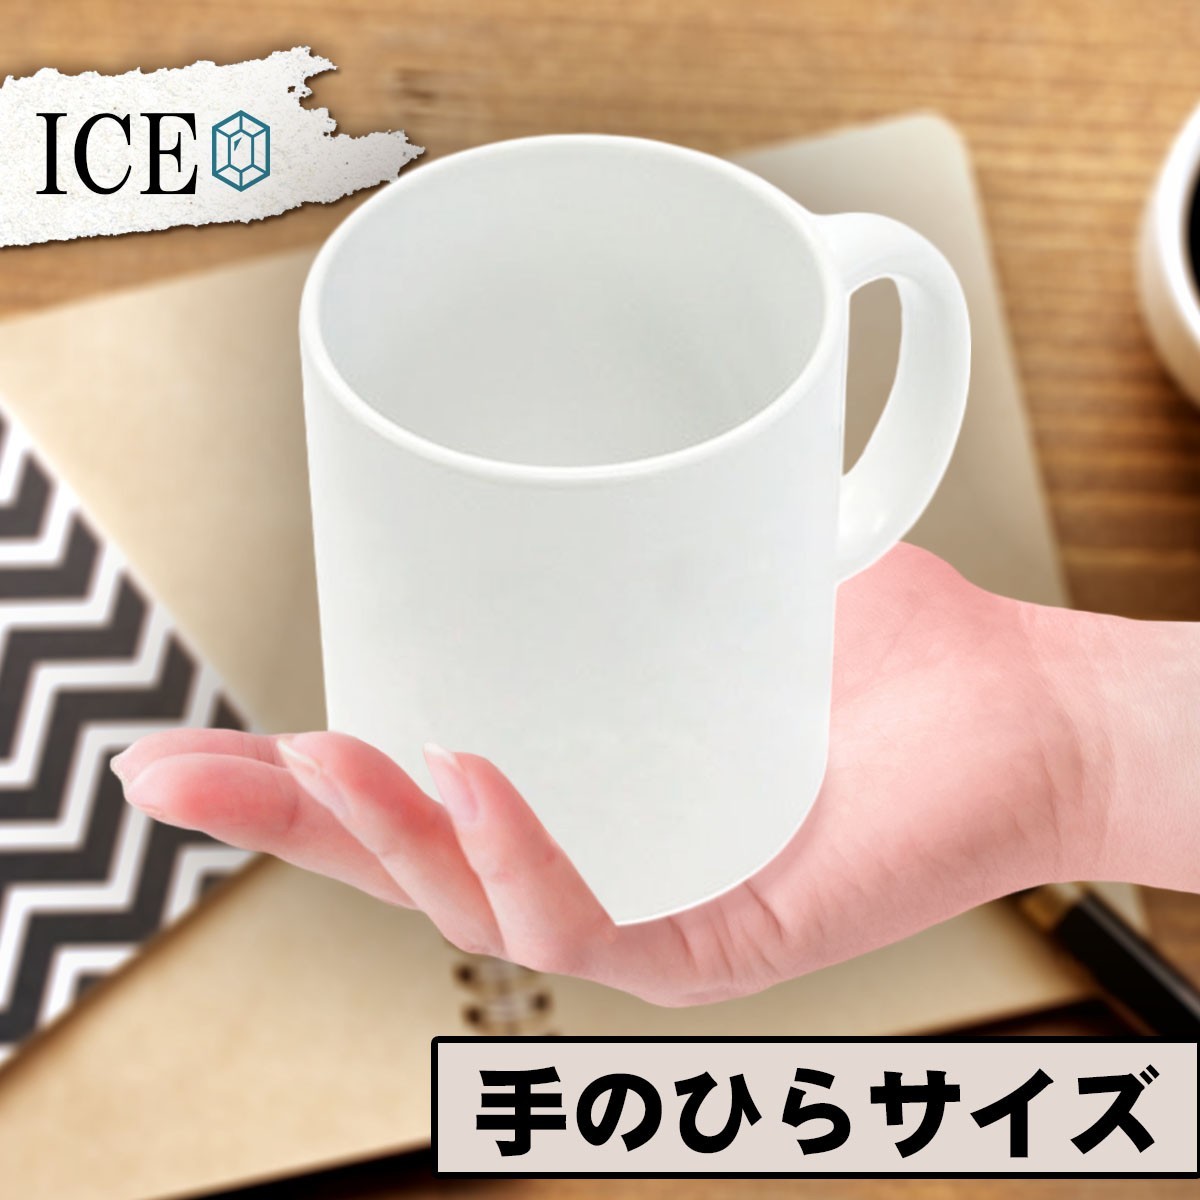 ウーパールーパー ピンク おもしろ マグカップ コップ 陶器 可愛い かわいい 白 シンプル かわいい カッコイイ シュール 面白い ジョーク_画像2